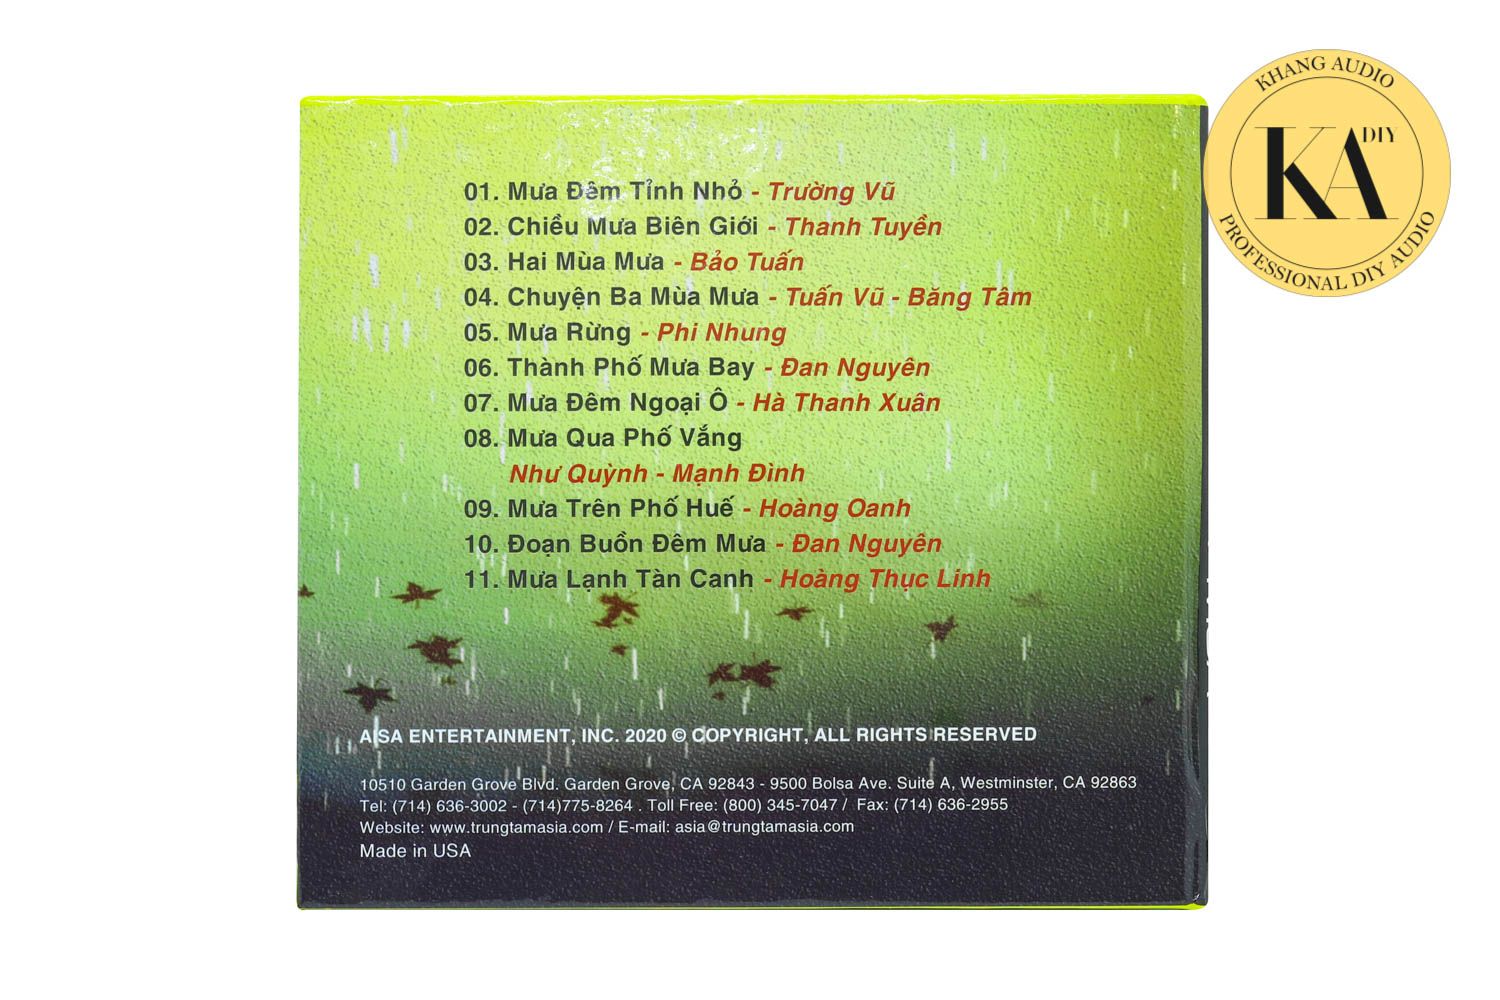 Combo CD Nhạc Vàng Nhạc Tình Tuyển Chọn Test Dàn 02 Khang Audio 0336380099